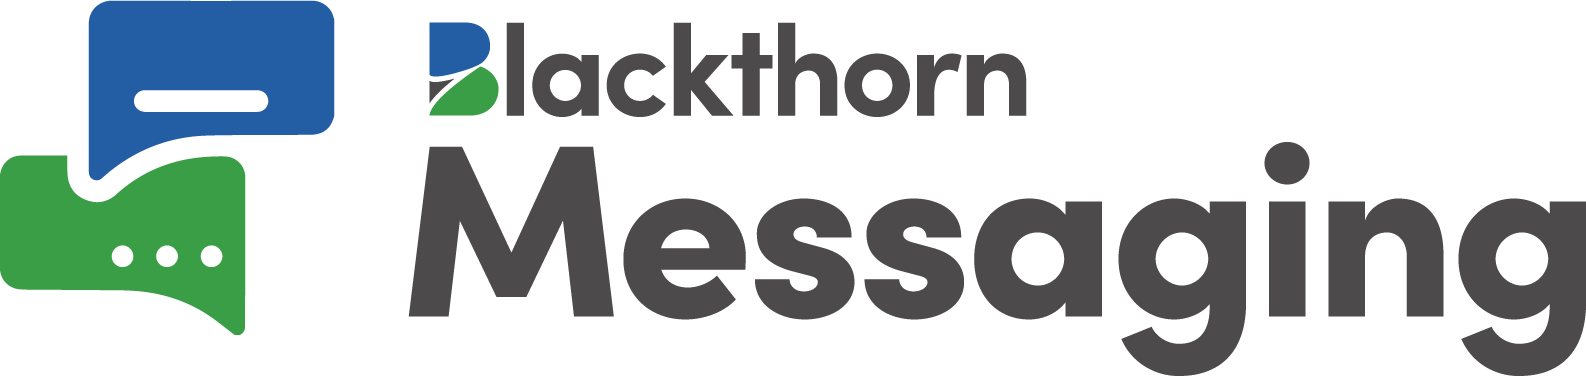 Blackthorn Messaging